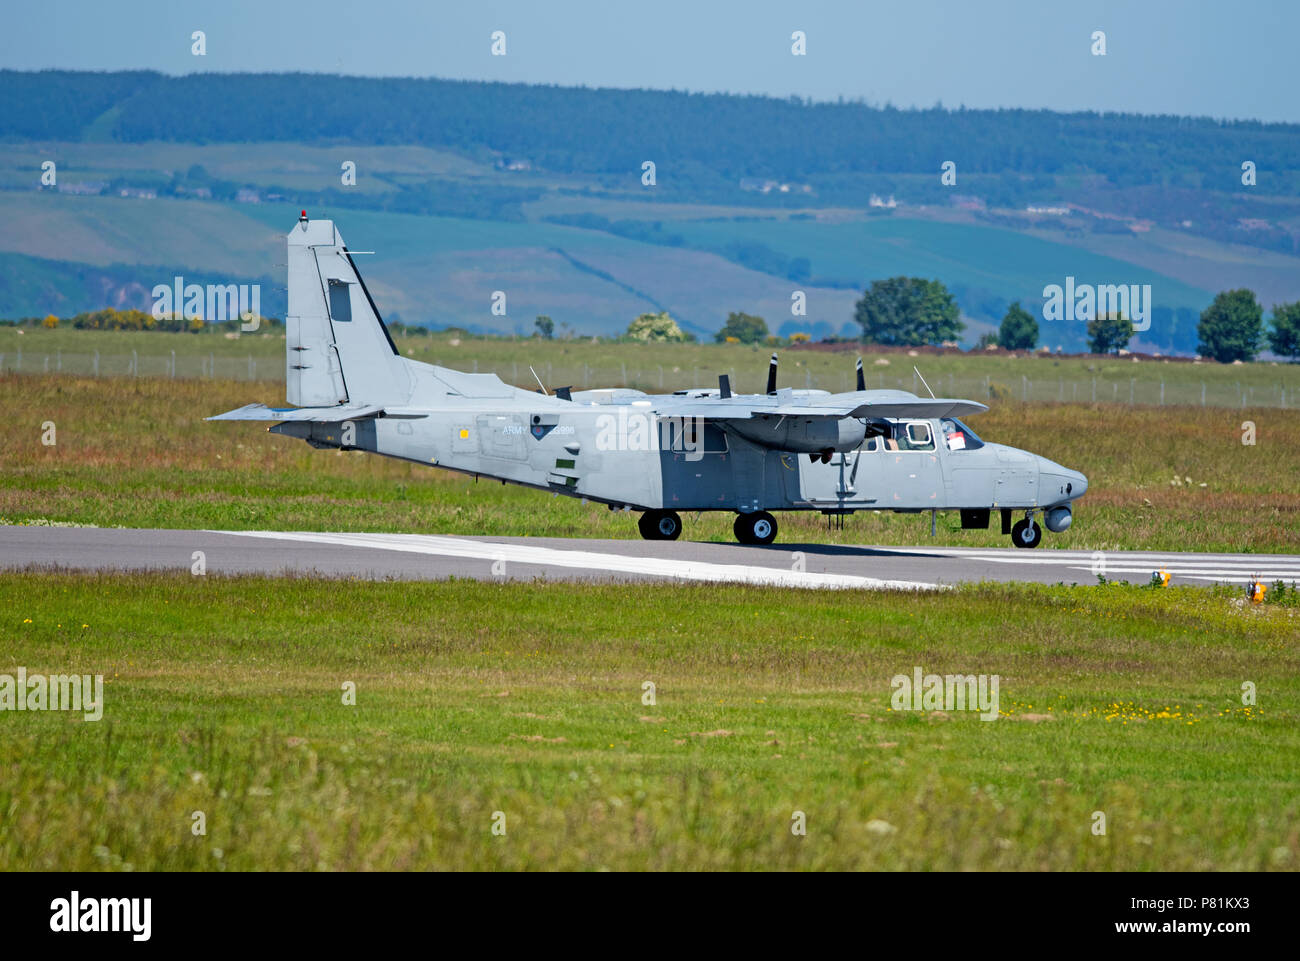 UK Army Air Corps Torres sur le point de décoller de l'aéroport de Inverness Dalcross dans les Highlands écossais. Banque D'Images